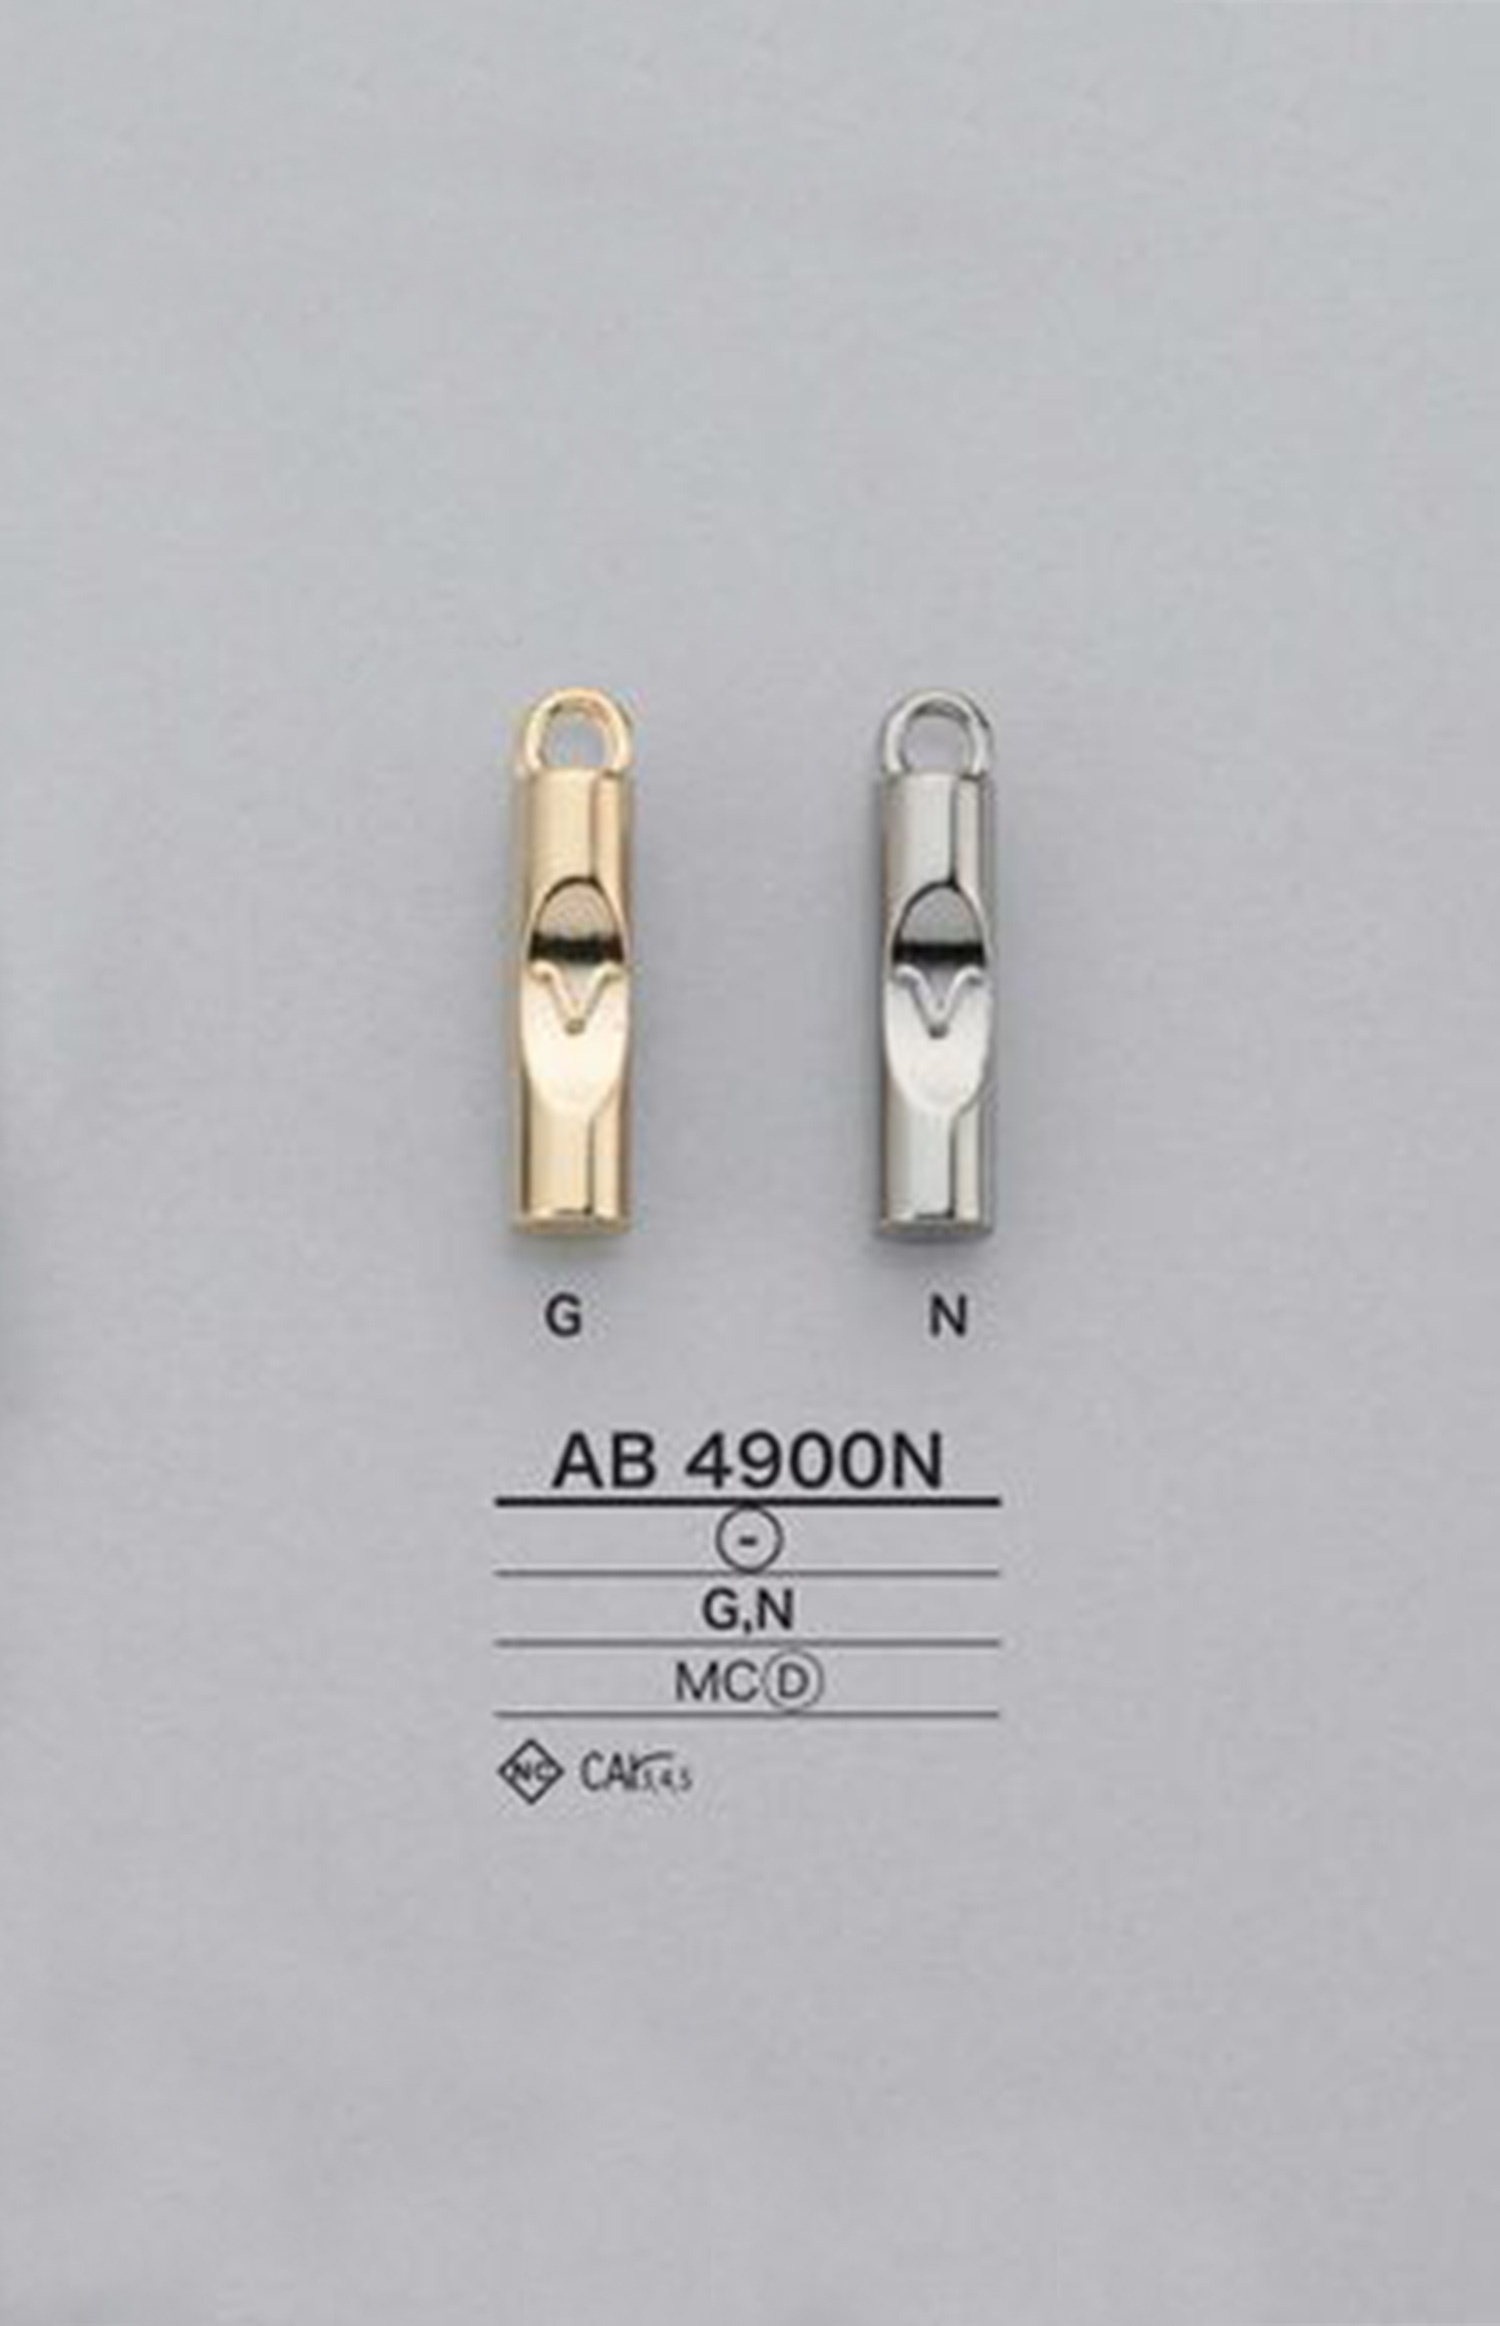 AB4900N Zylindrischer Reißverschlusspunkt (Pull Tab) IRIS